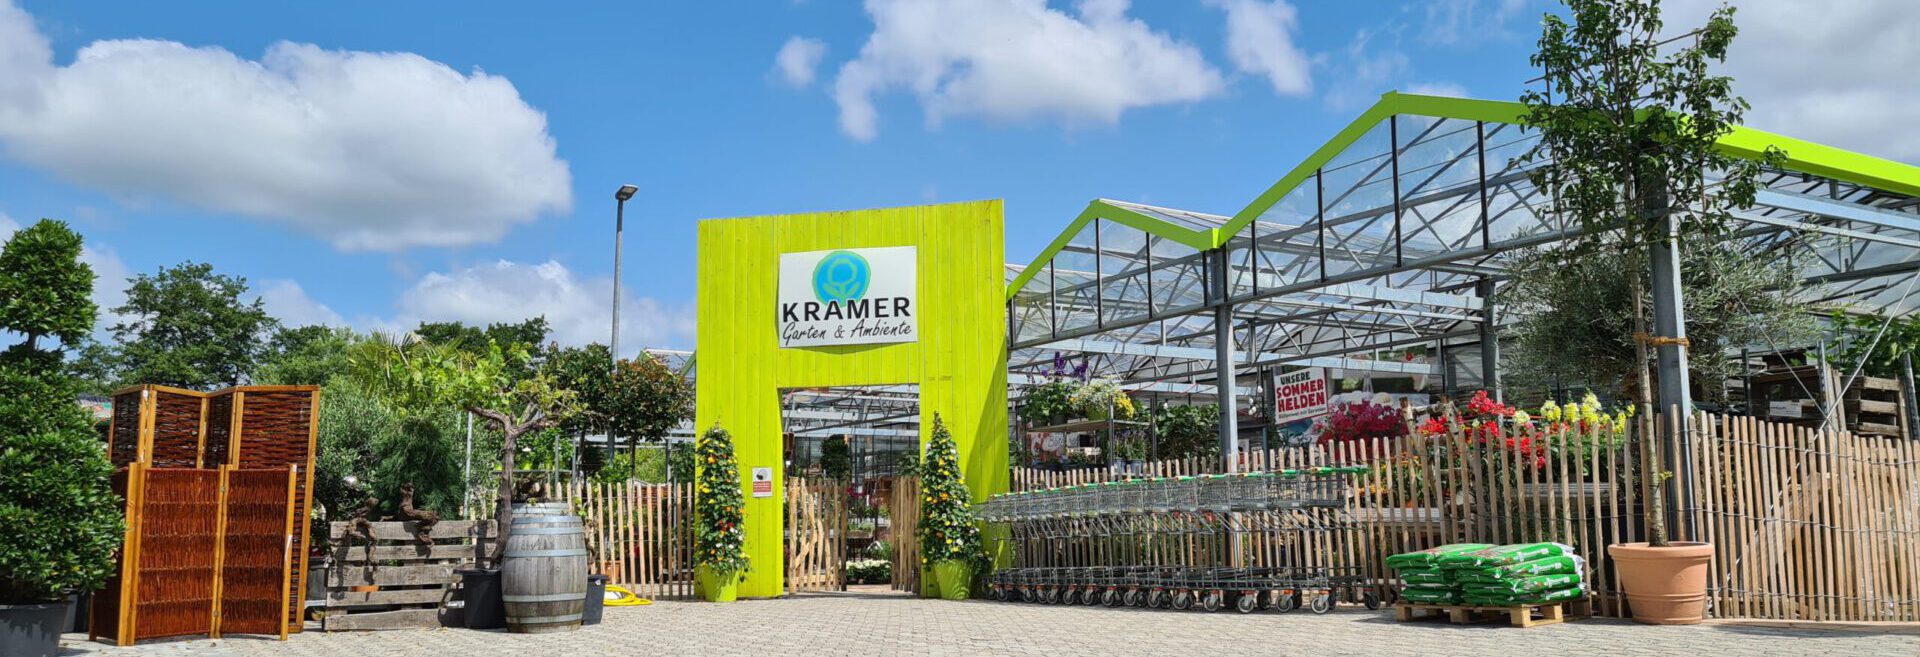 Kramer Garten & Ambiente